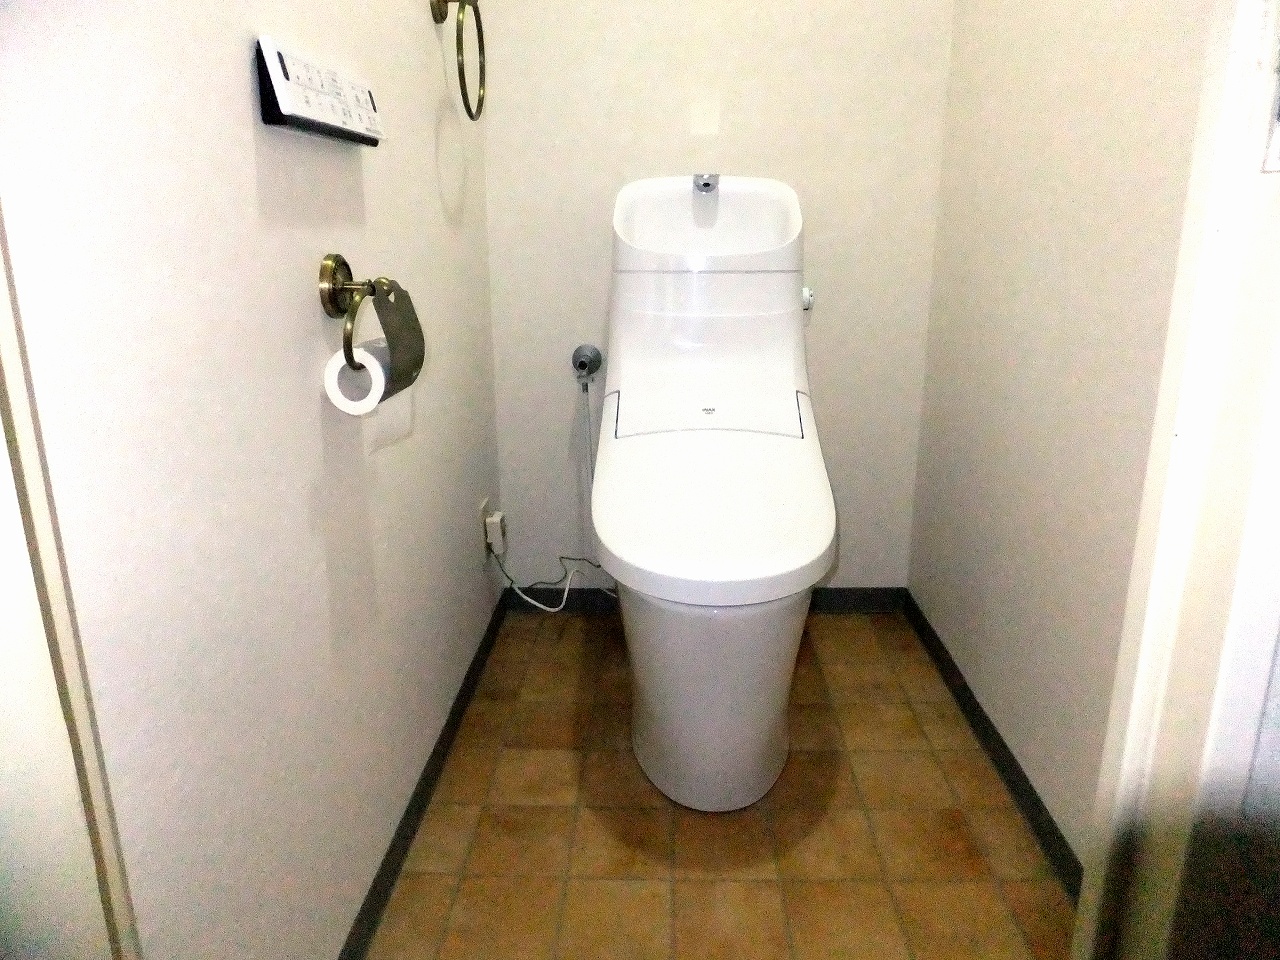 今のトイレは 年前のものに比べて どれだけ進化したのか リラックス空間を快適に トイレ 翔飛工業